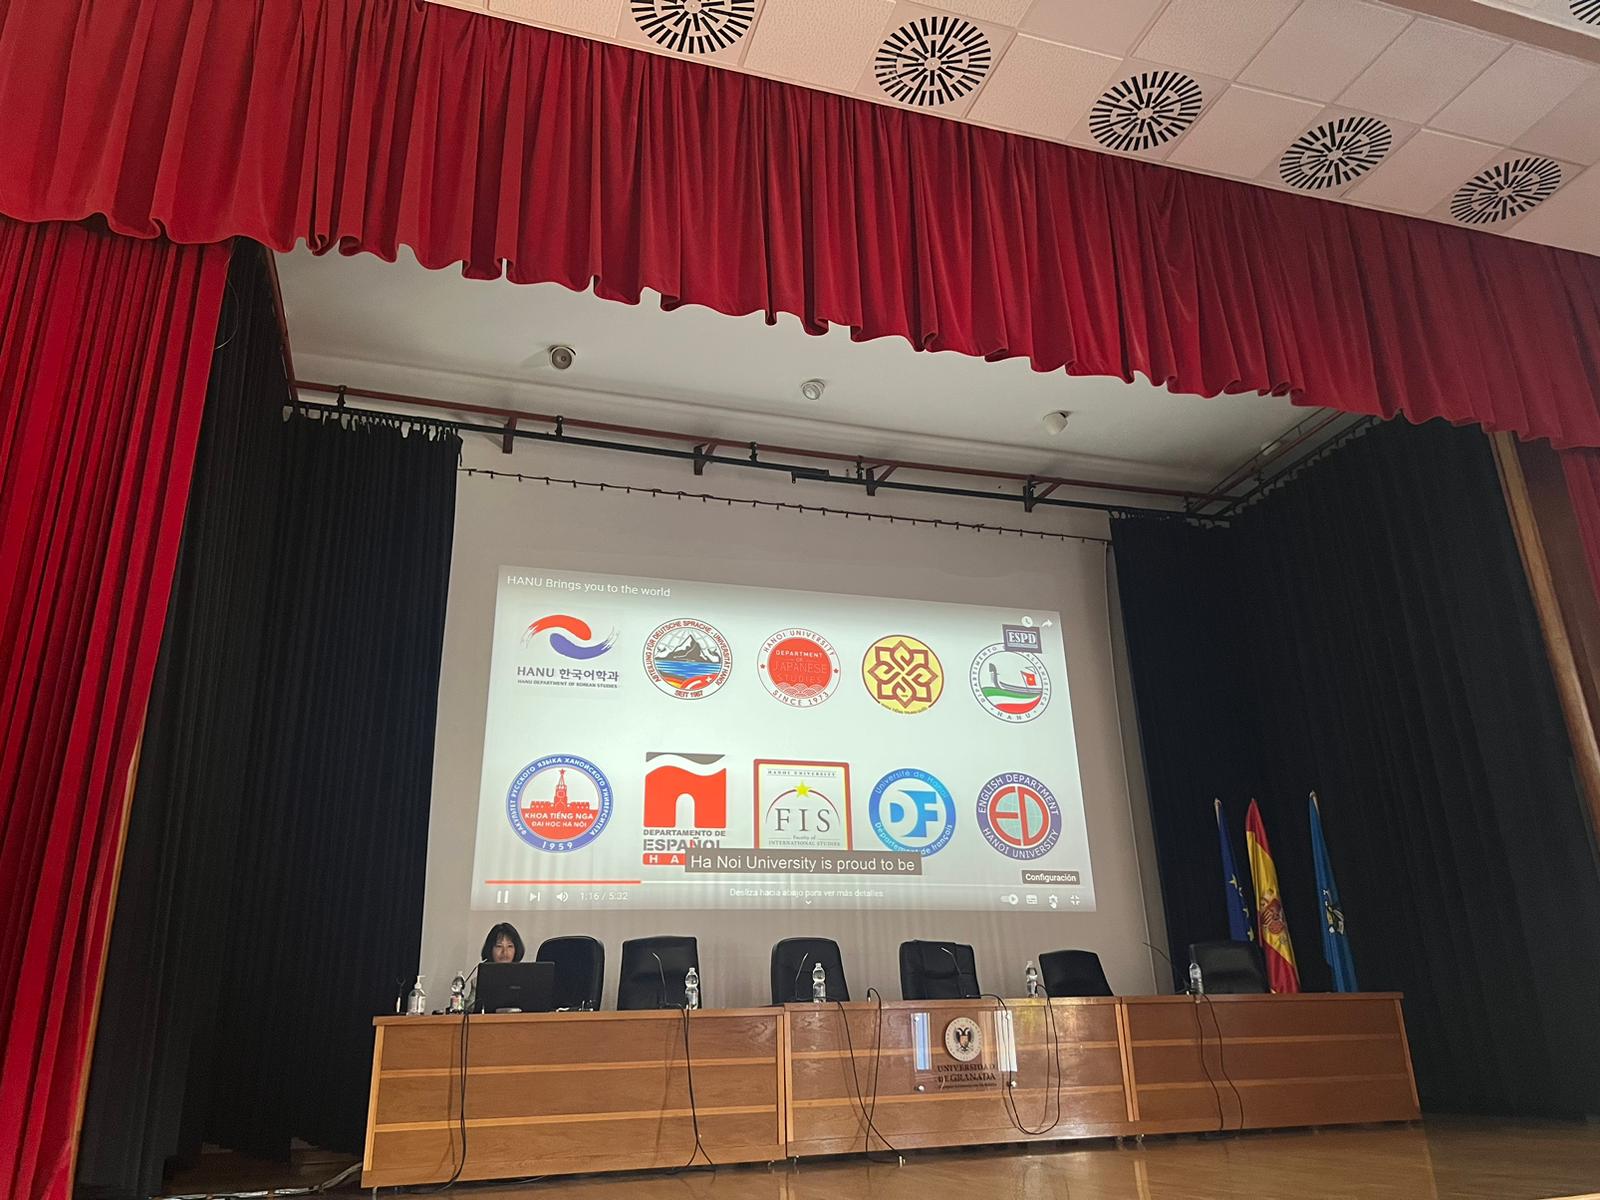 Escenario del salón de actos del Campus de Melilla con la presentación de los logotipos de las distintas universidades que participan en el Staff  Training Week